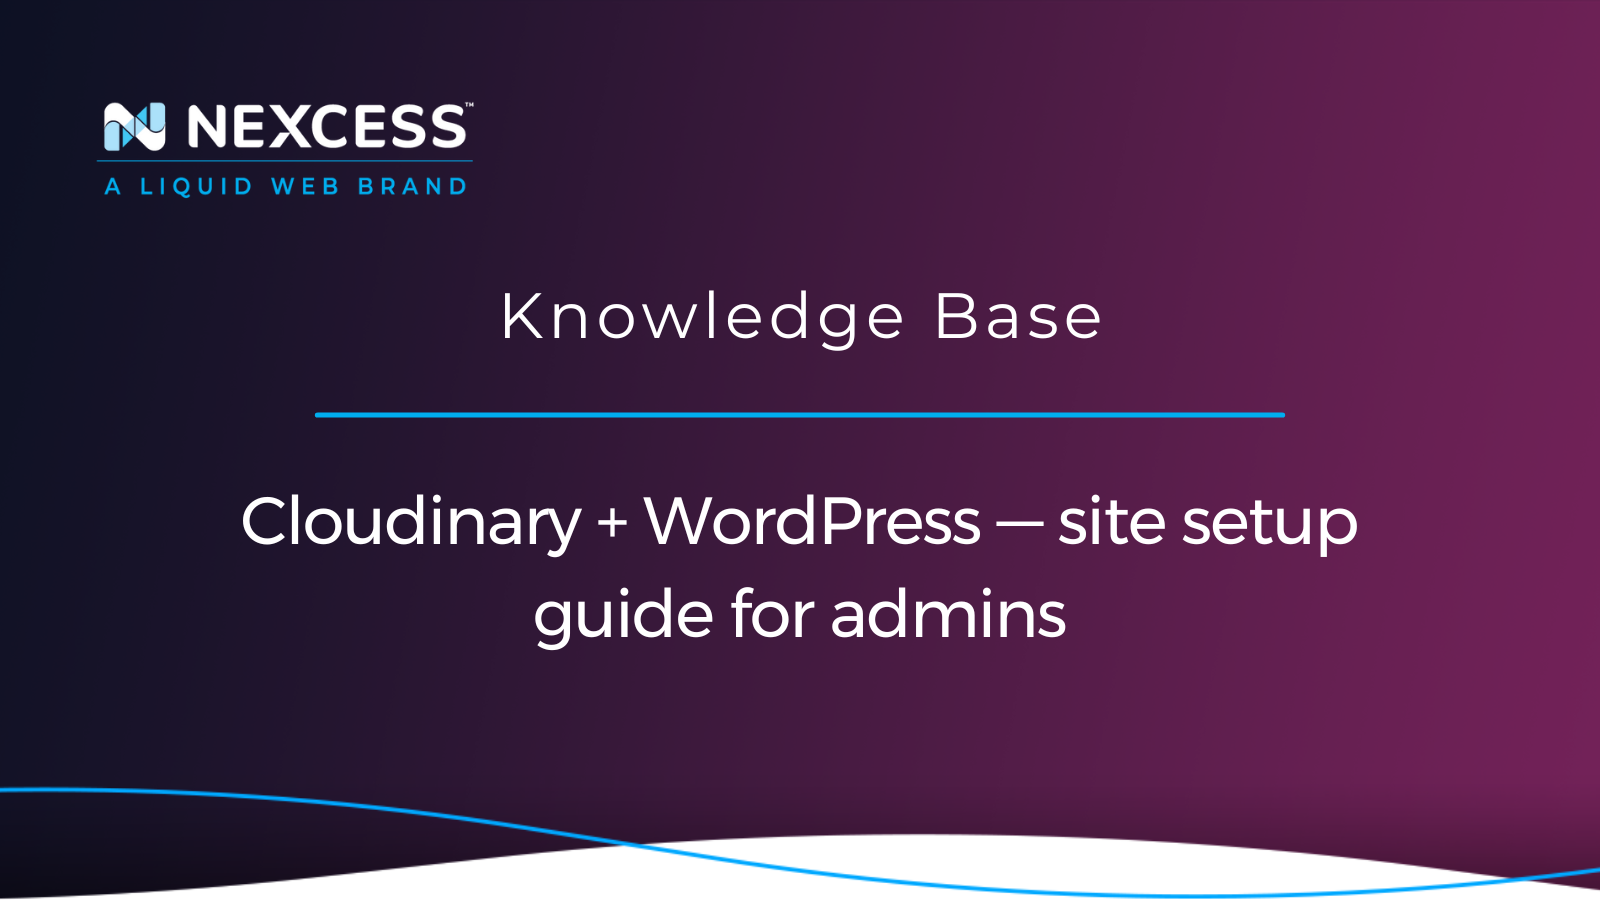 Cloudinary + WordPress — site setup guide for admins